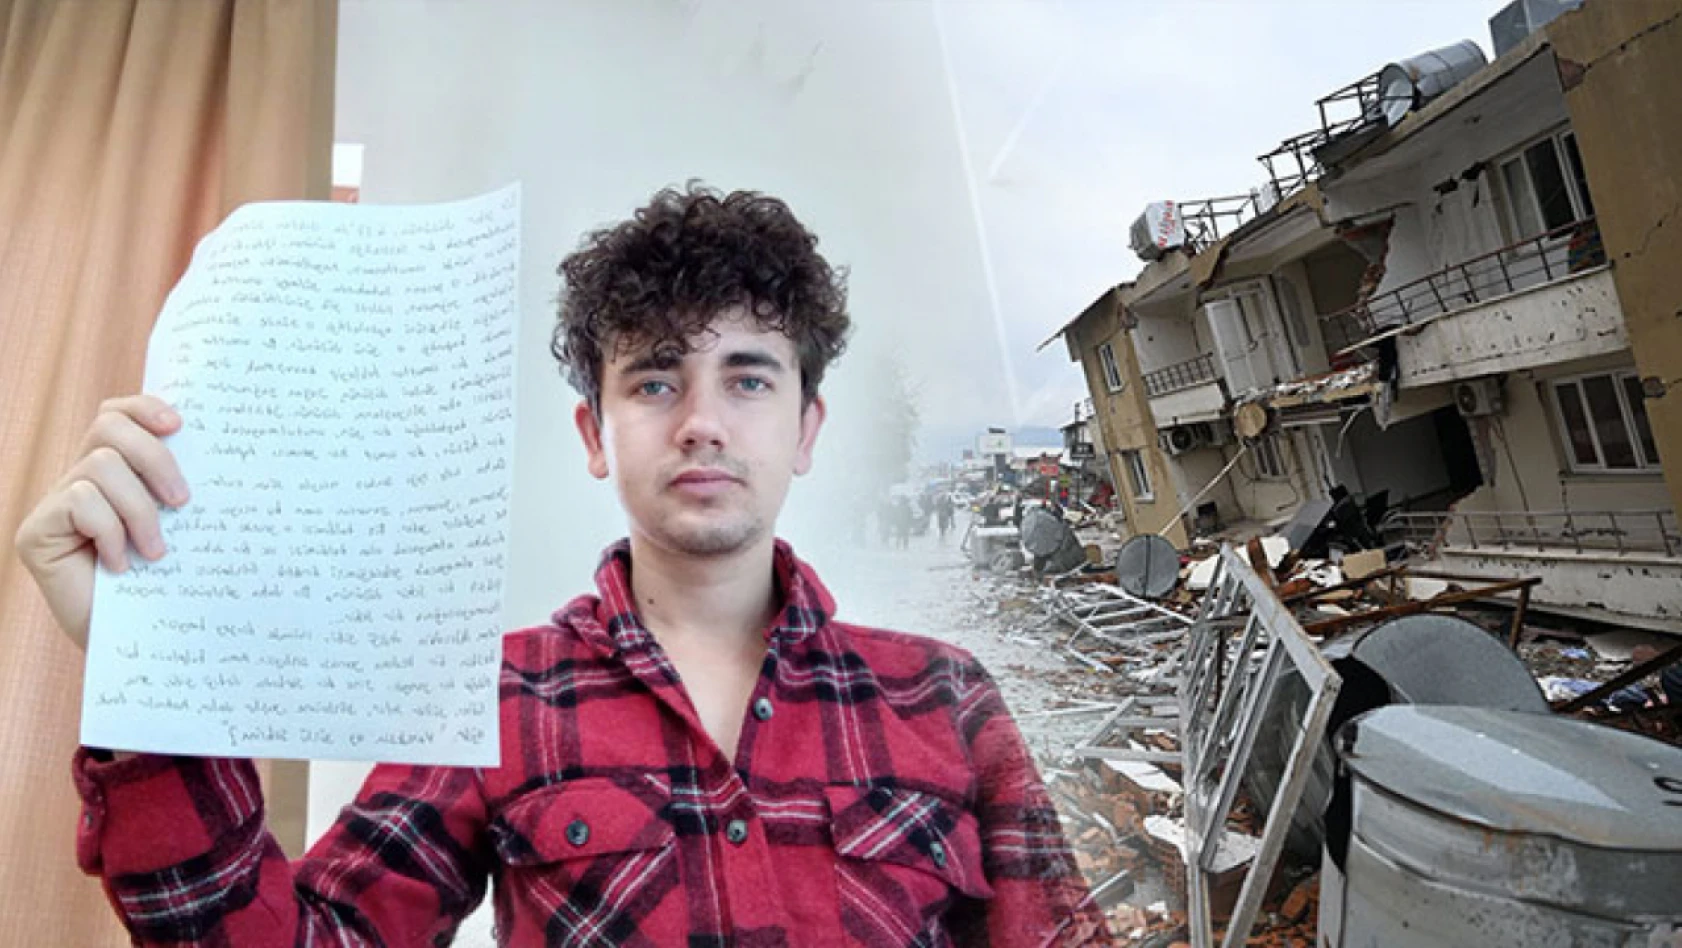 Üniversiteli genç, depremin hissettirdiklerini yazdığı yazıyla anlattı